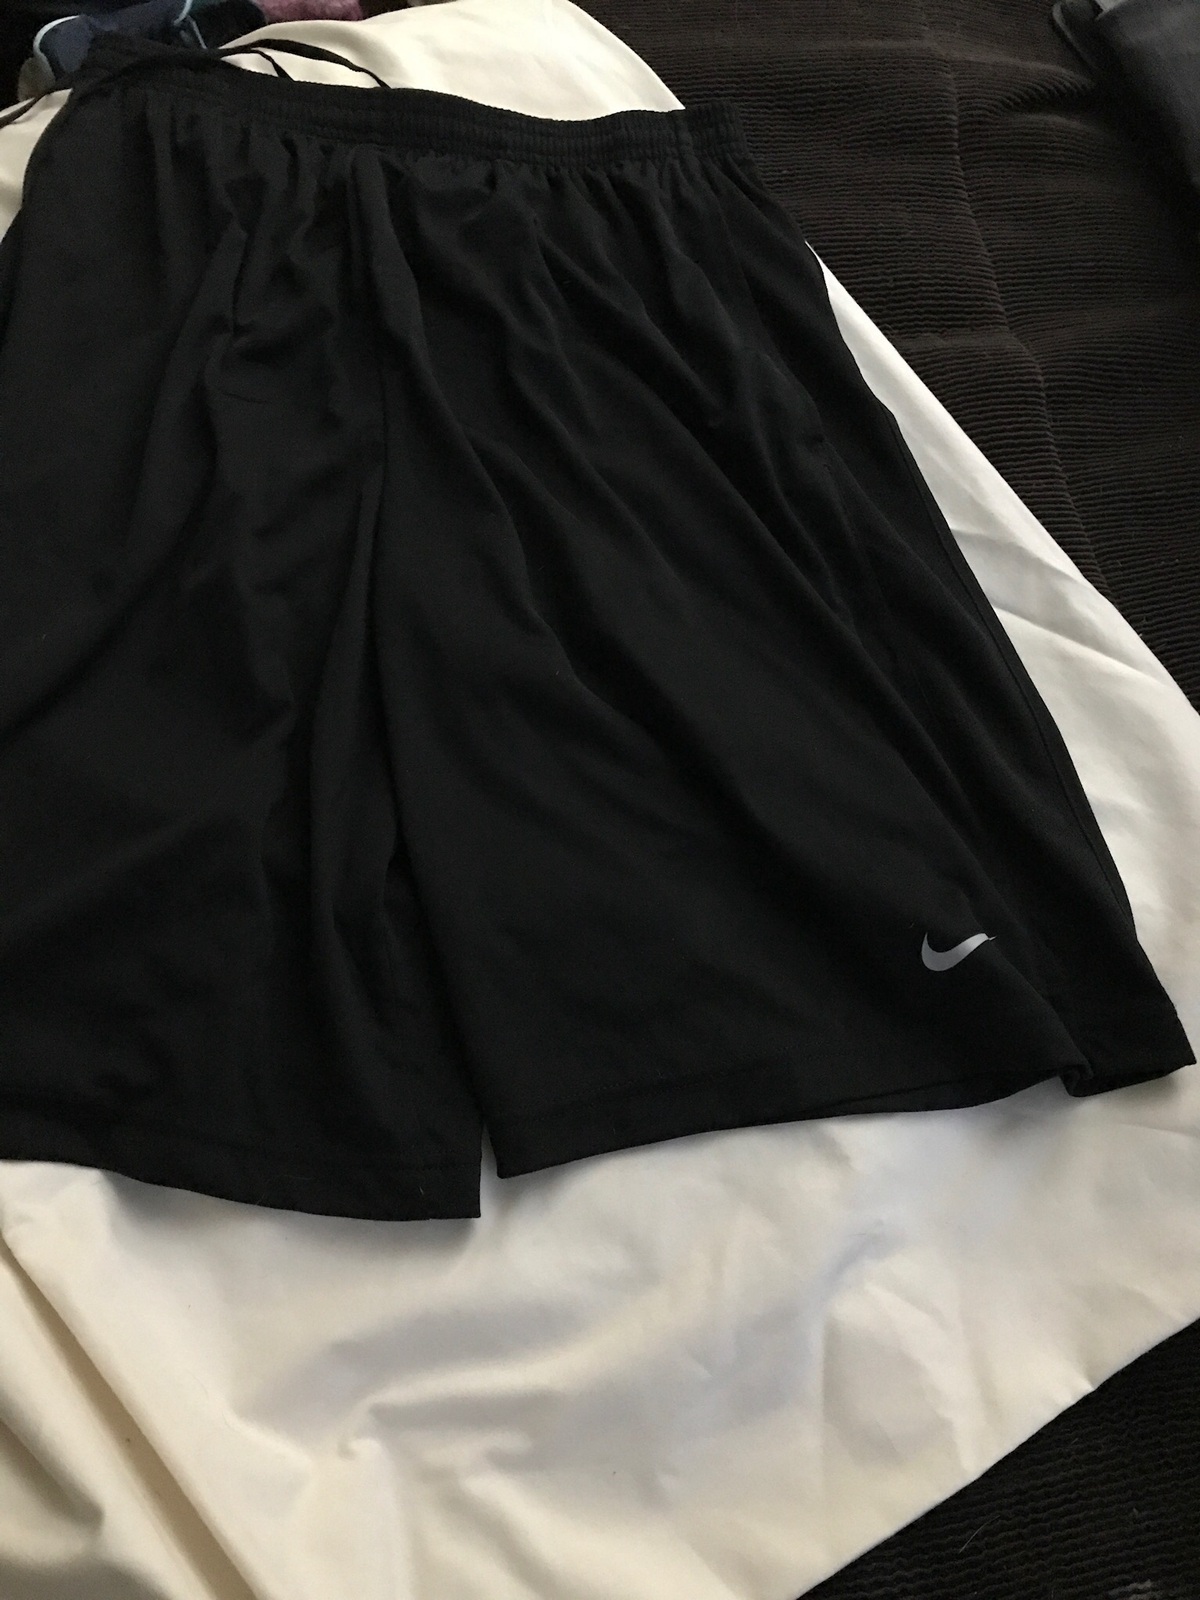 Mens Nike Basketball Shorts - Shorts